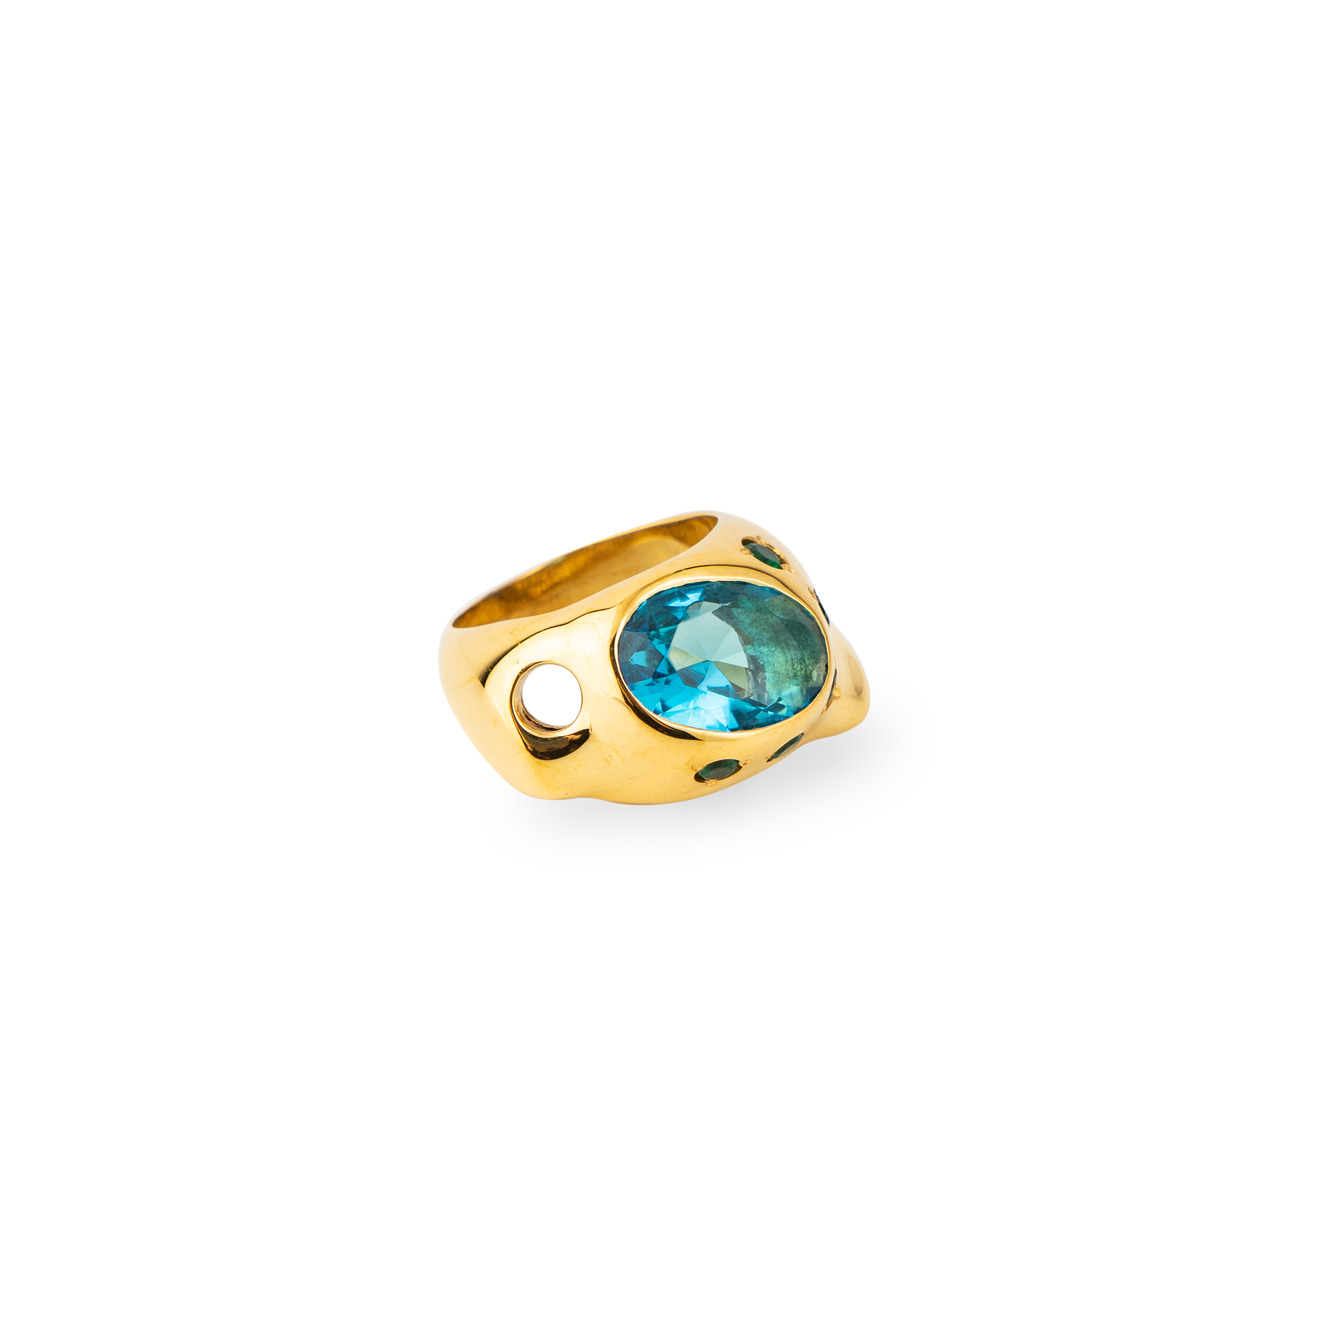 Janashia Золотистое кольцо Ava волнообразной формы со вставками из зеленых и голубого кристалла janashia позолоченные серьги susan со вставками из белого жемчуга